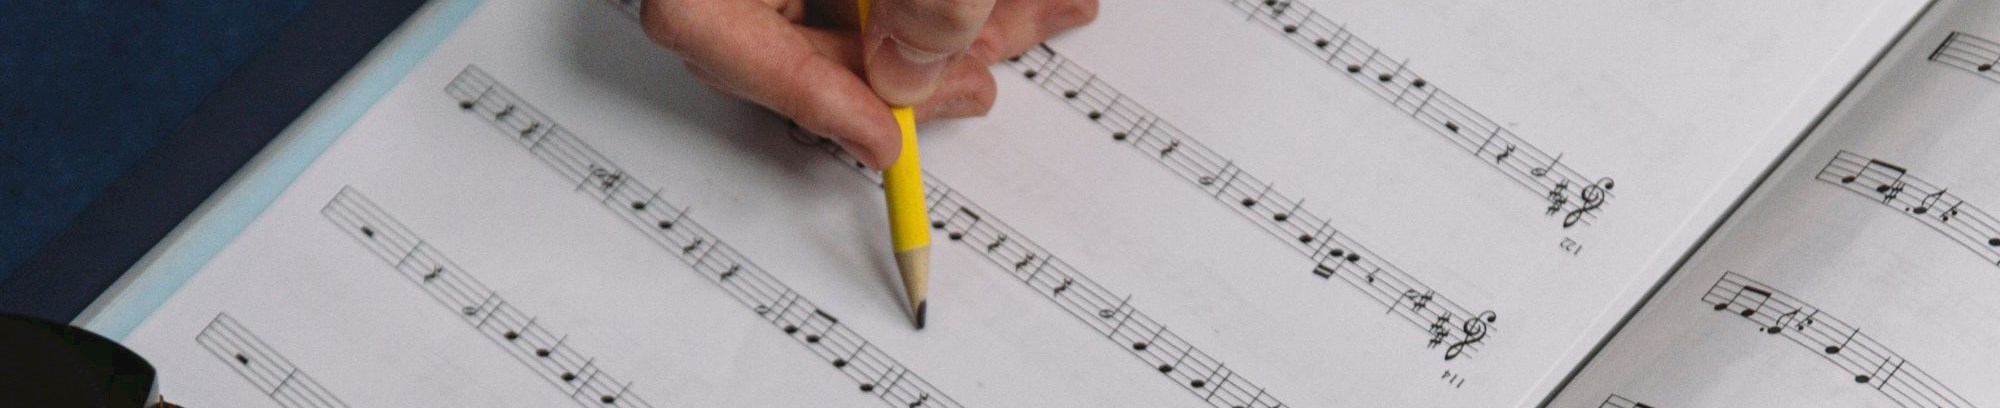 Lær at komponere og skrive dine egne noder